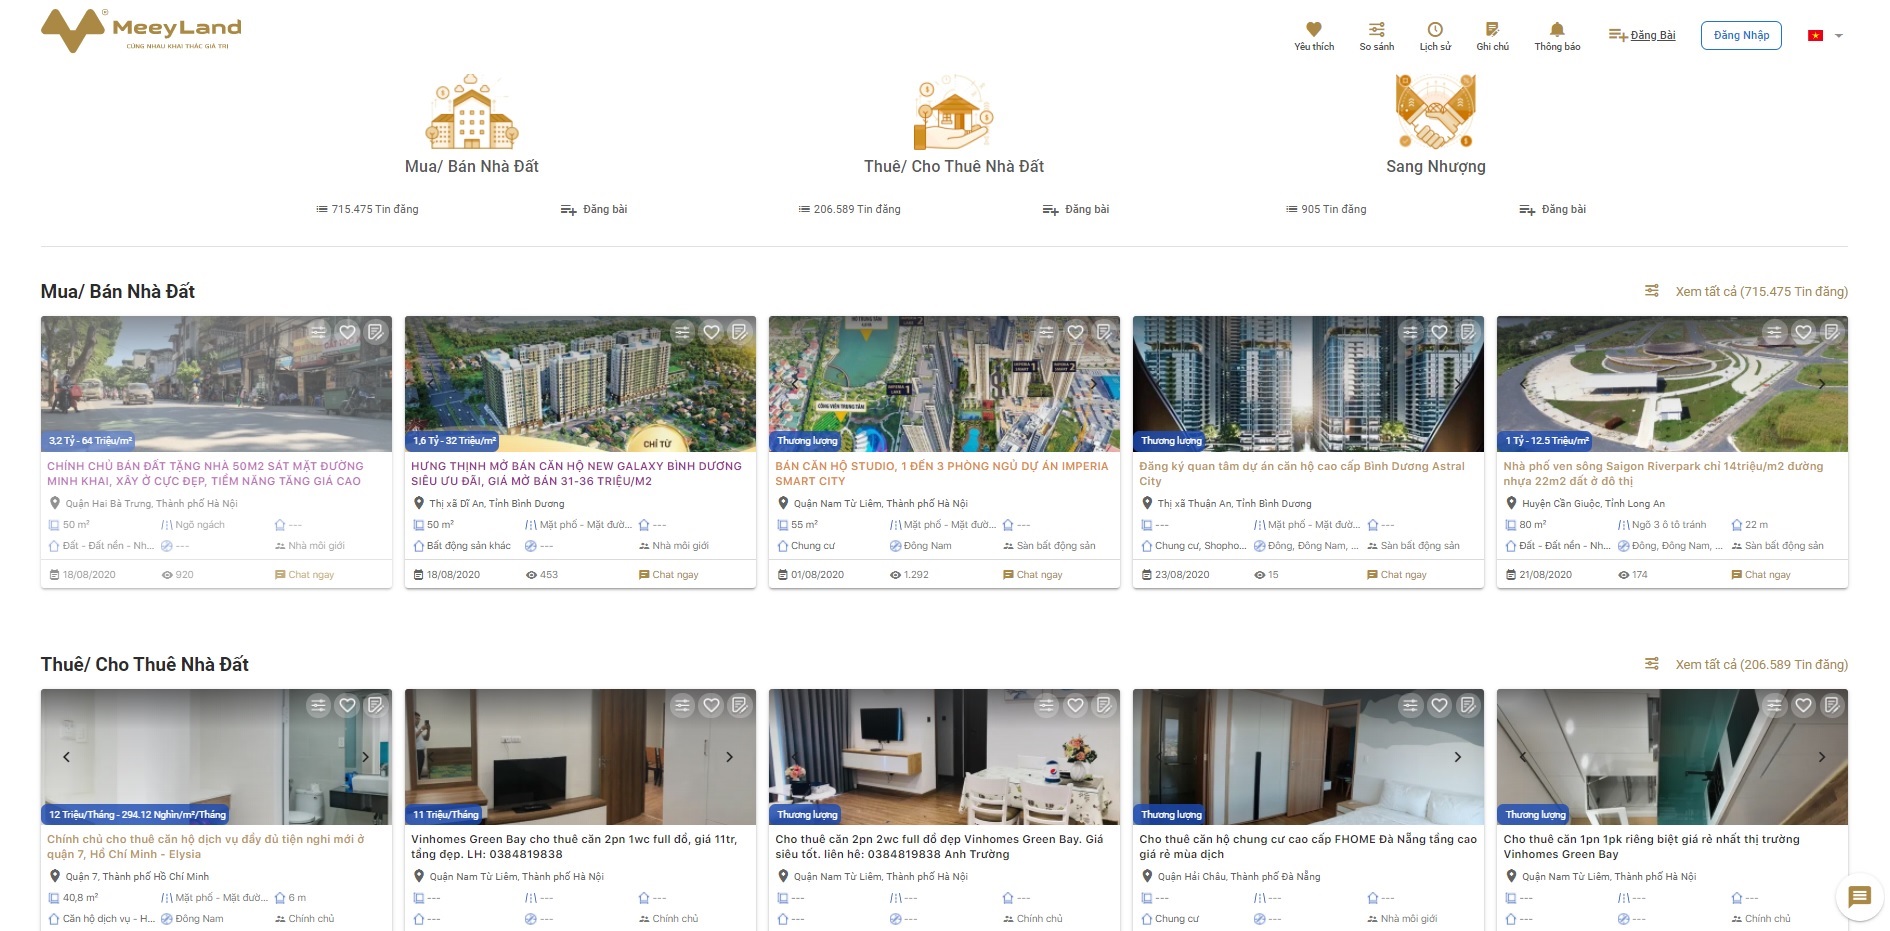  Đăng tin trên website mua bán cho thuê bất động sản meeyland.com